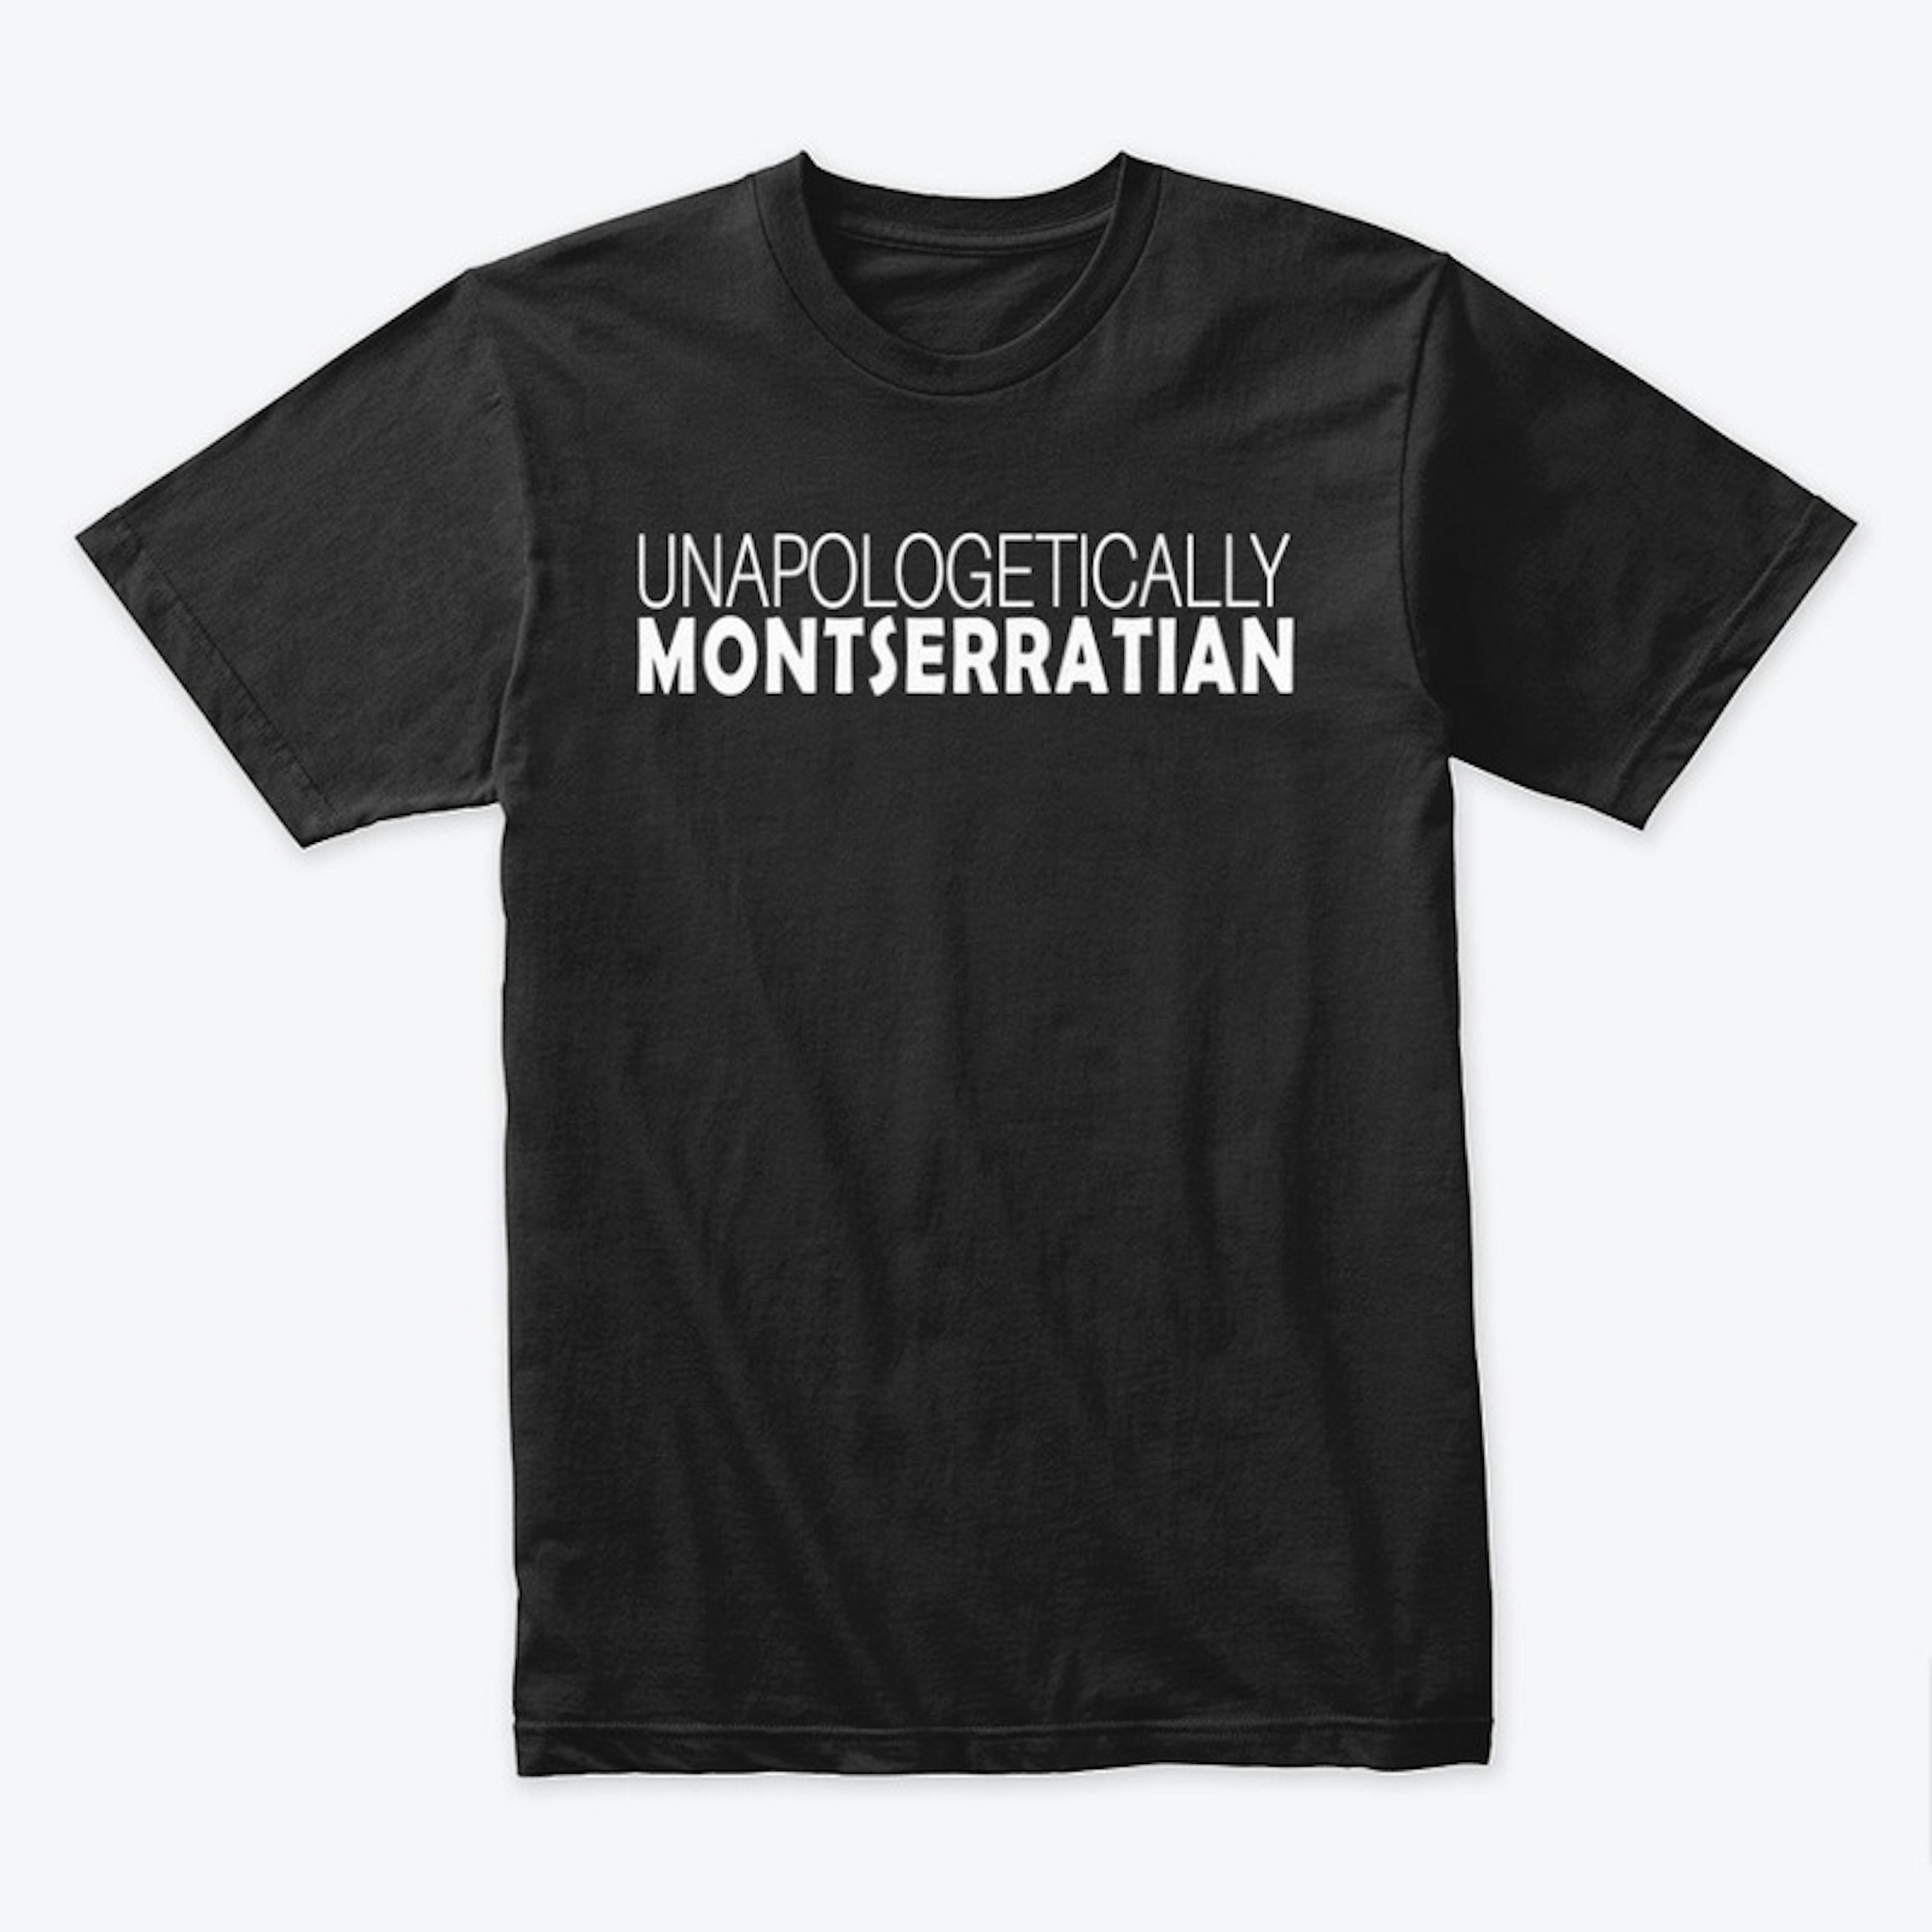 Unapologetically Montserratian - Black